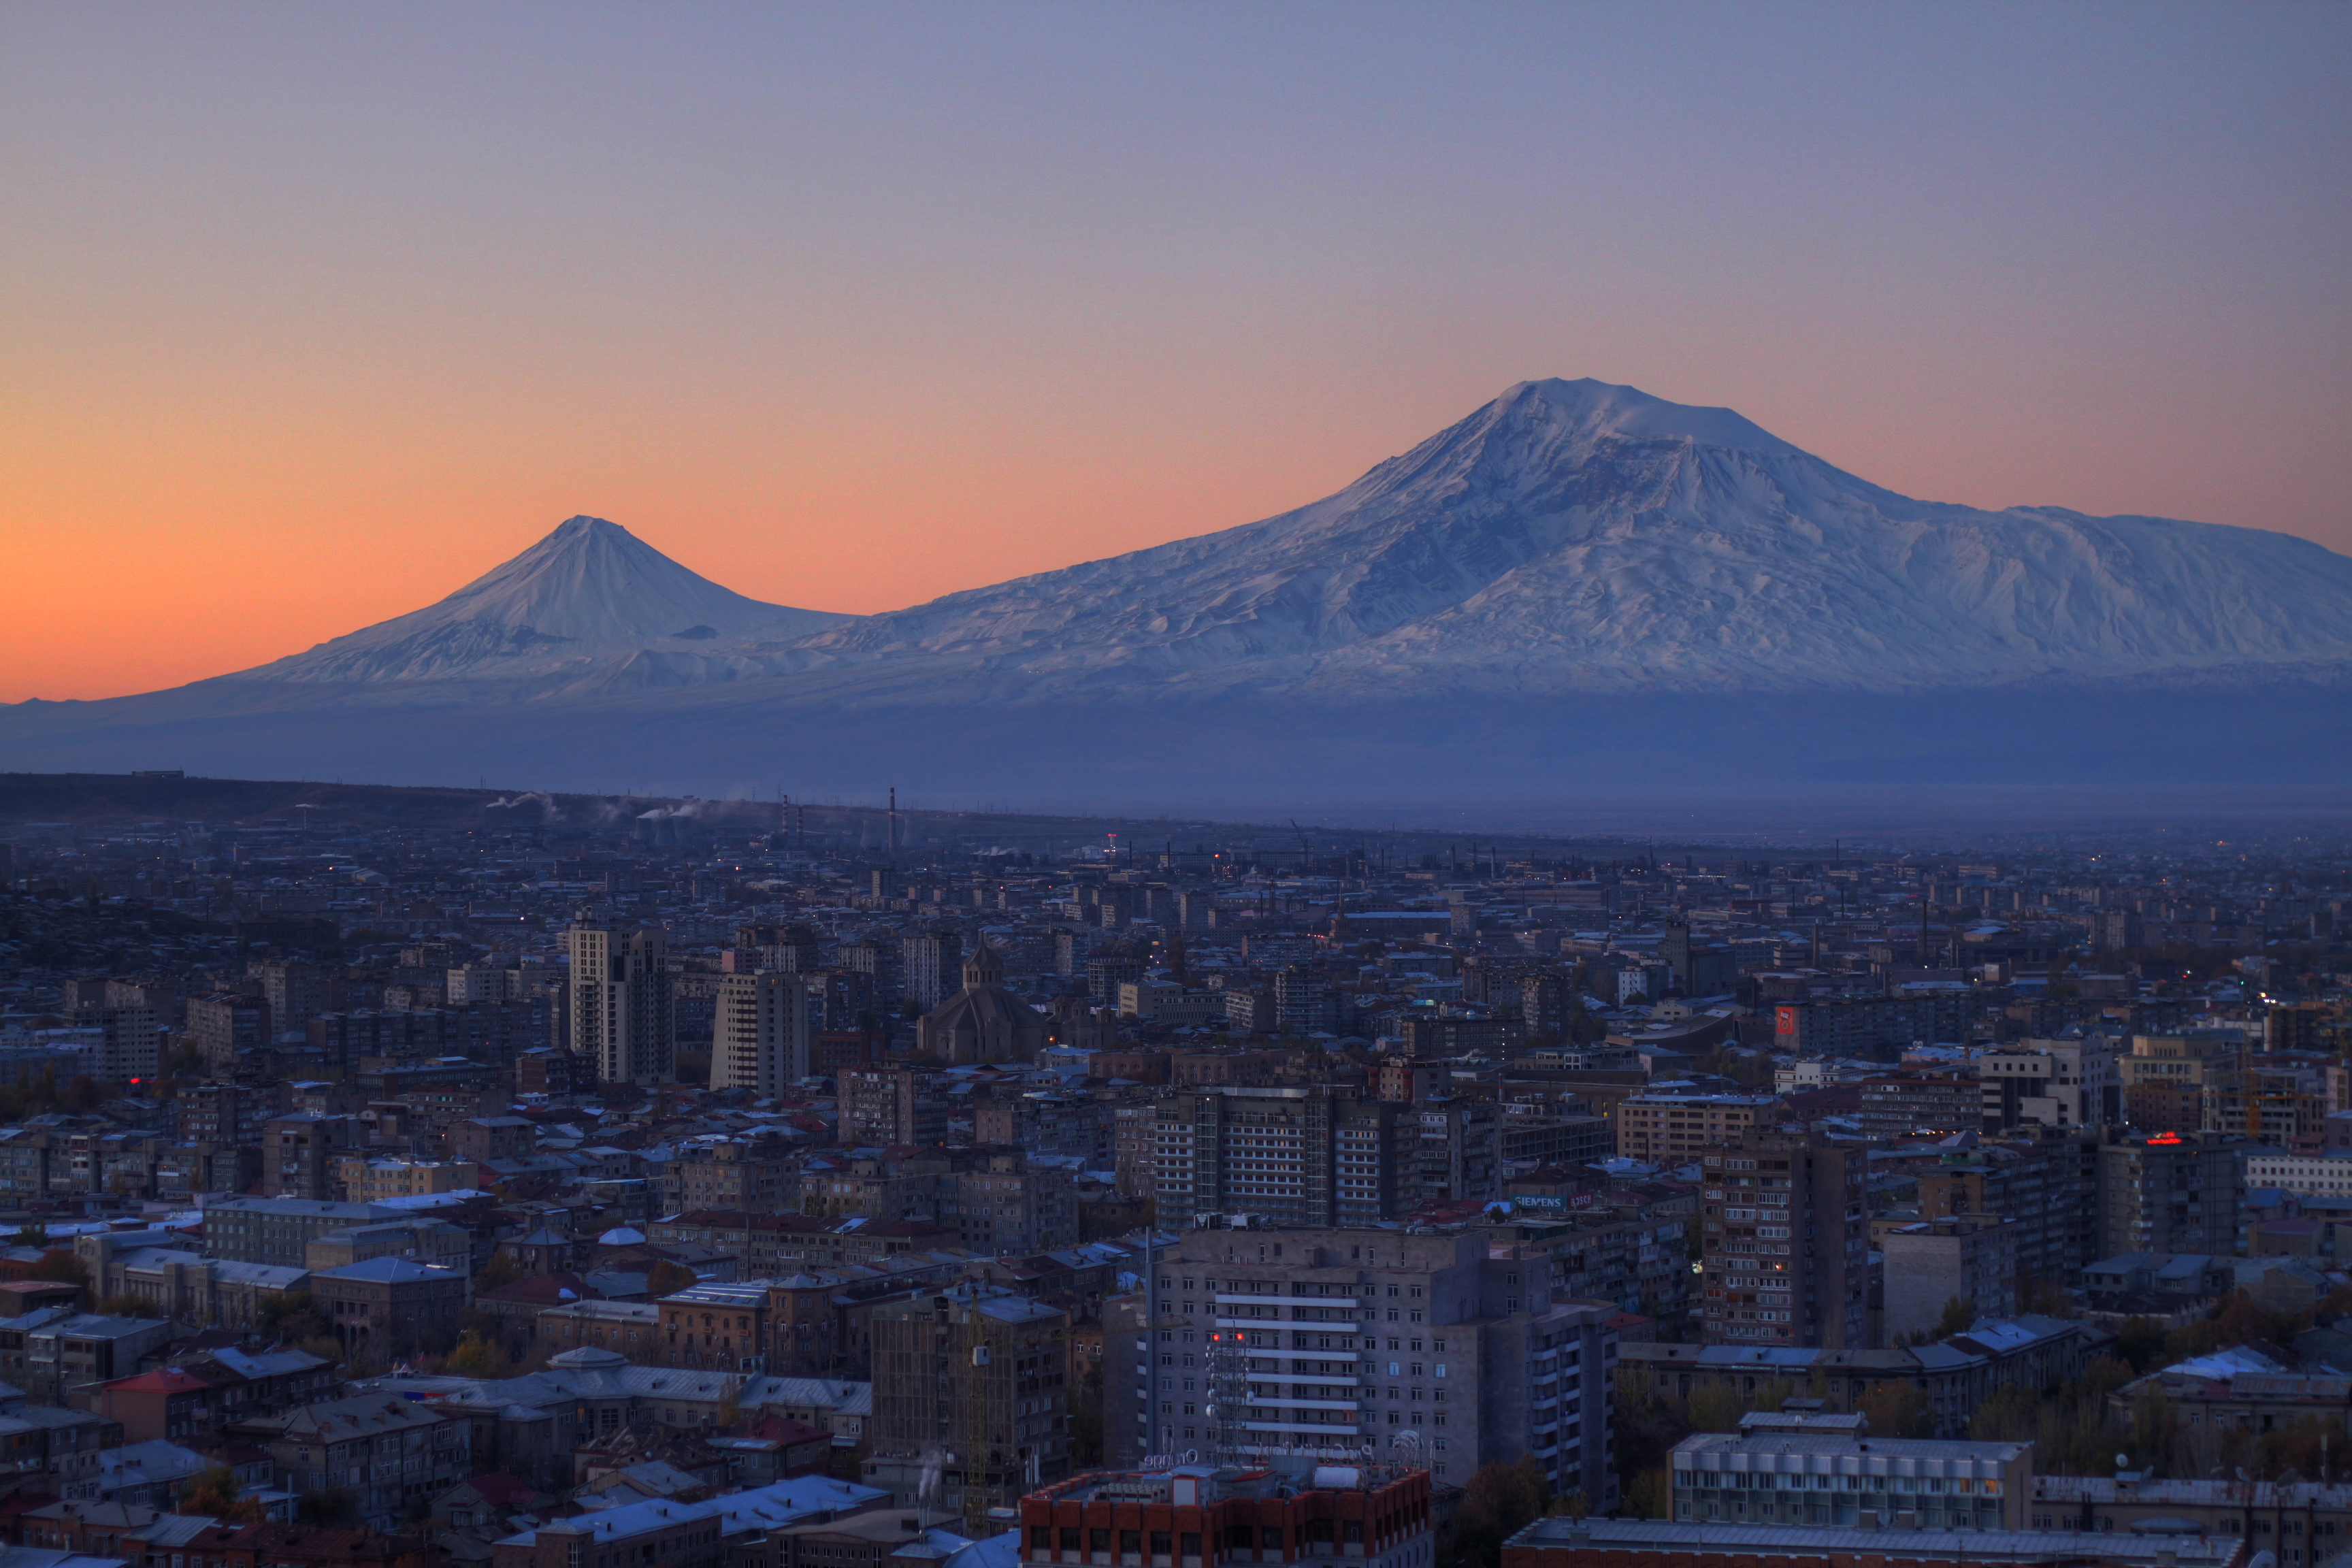 Гора в ереване. Гора Масис Армения. Ереван гора Арарат. Арарат вид со стороны Турции. Гора Арарат сис Масис.